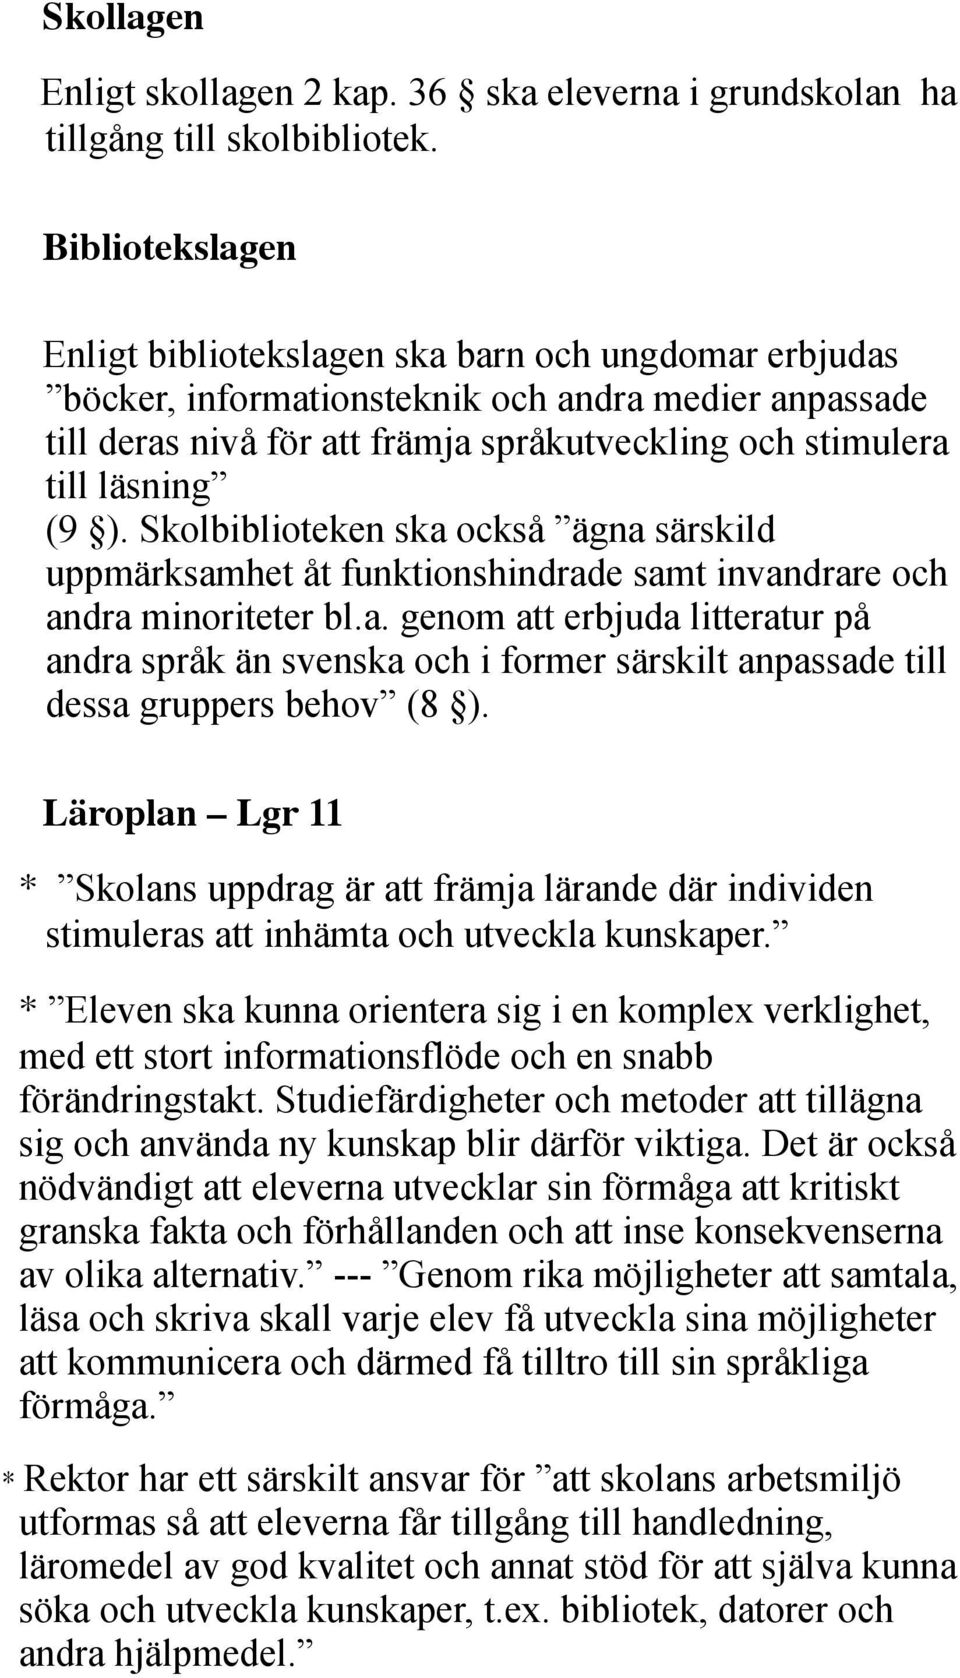 (9 ). Skolbiblioteken ska också ägna särskild uppmärksamhet åt funktionshindrade samt invandrare och andra minoriteter bl.a. genom att erbjuda litteratur på andra språk än svenska och i former särskilt anpassade till dessa gruppers behov (8 ).